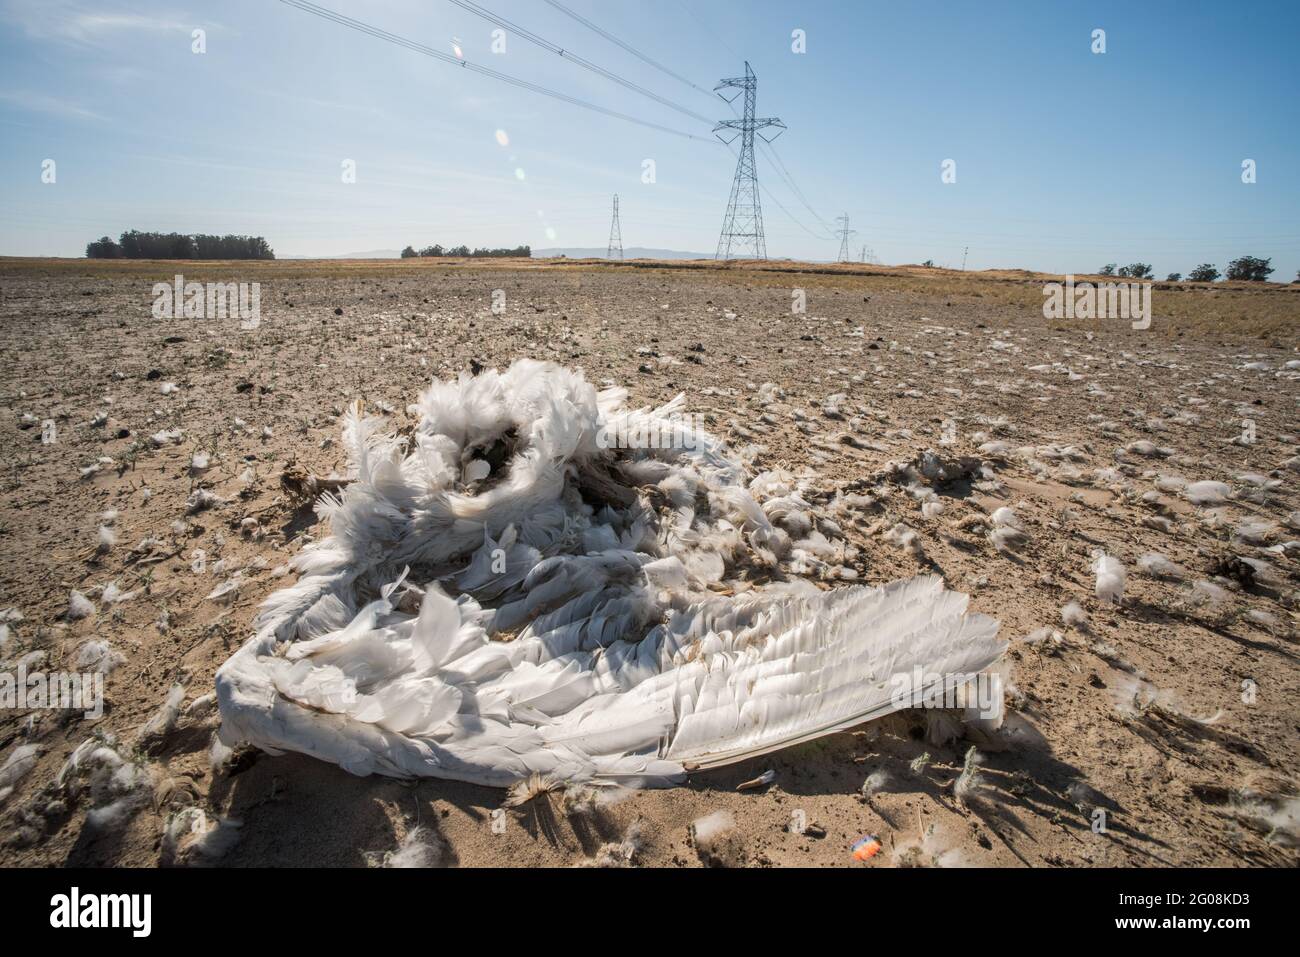 Un cisne de tundra muerto (Cygnus columbianus) en California, uno de los millones de aves muertas como resultado de una colisión con líneas eléctricas. Foto de stock